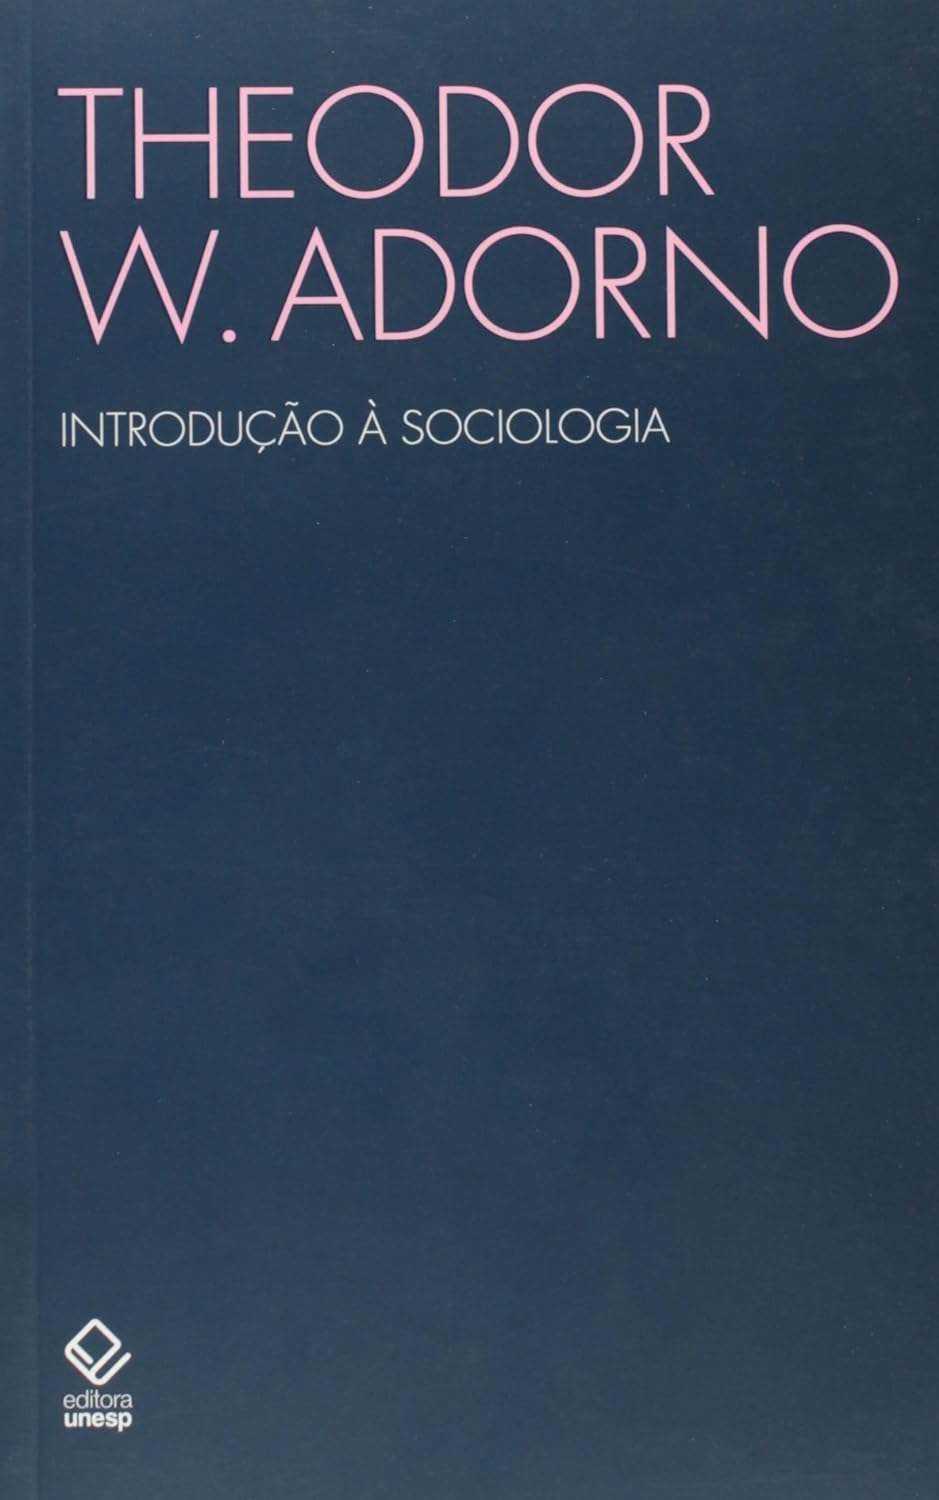 Theodor W. Adorno: Introdução à sociologia (Portuguese language, 2008, Editora Unesp)